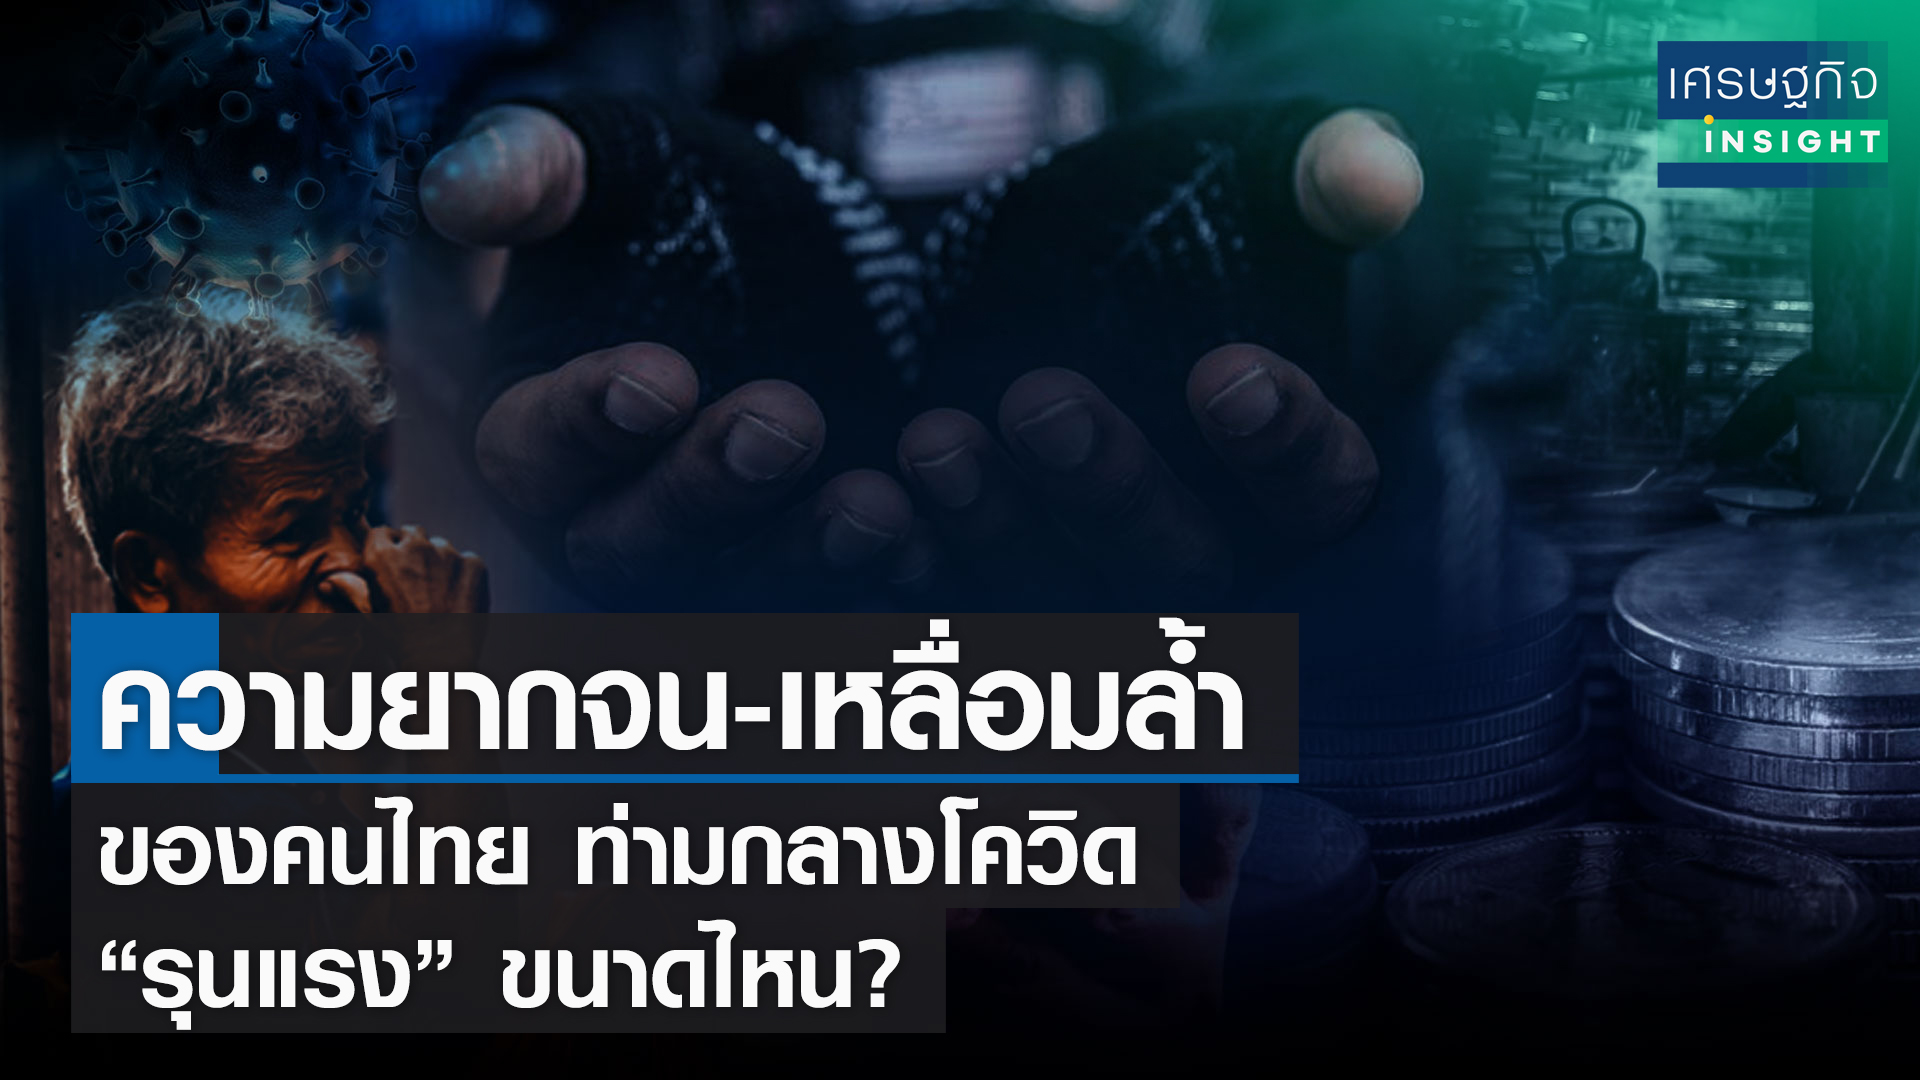 ความยากจน-เหลื่อมล้ำของคนไทย ท่ามกลางโควิด “รุนแรง” ขนาดไหน?